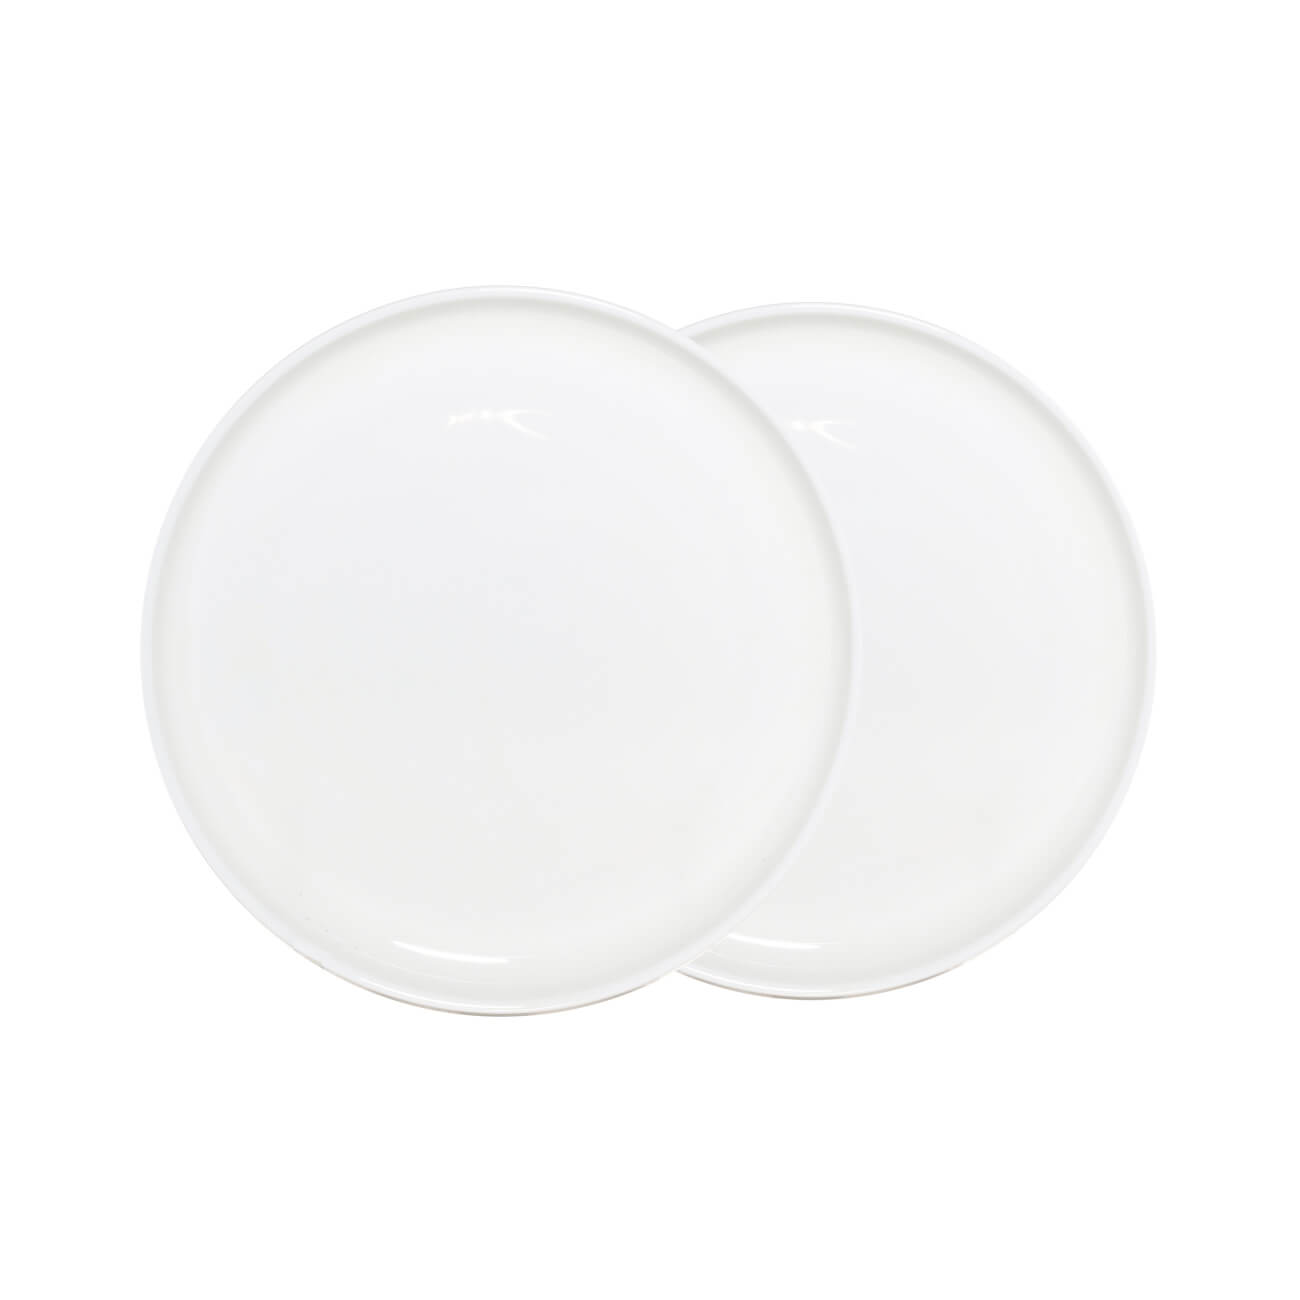 Тарелка десертная, 20 см, 2 шт, фарфор F, белая, Ideal white тарелка суповая 20х5 см 2 шт фарфор f белая ideal white